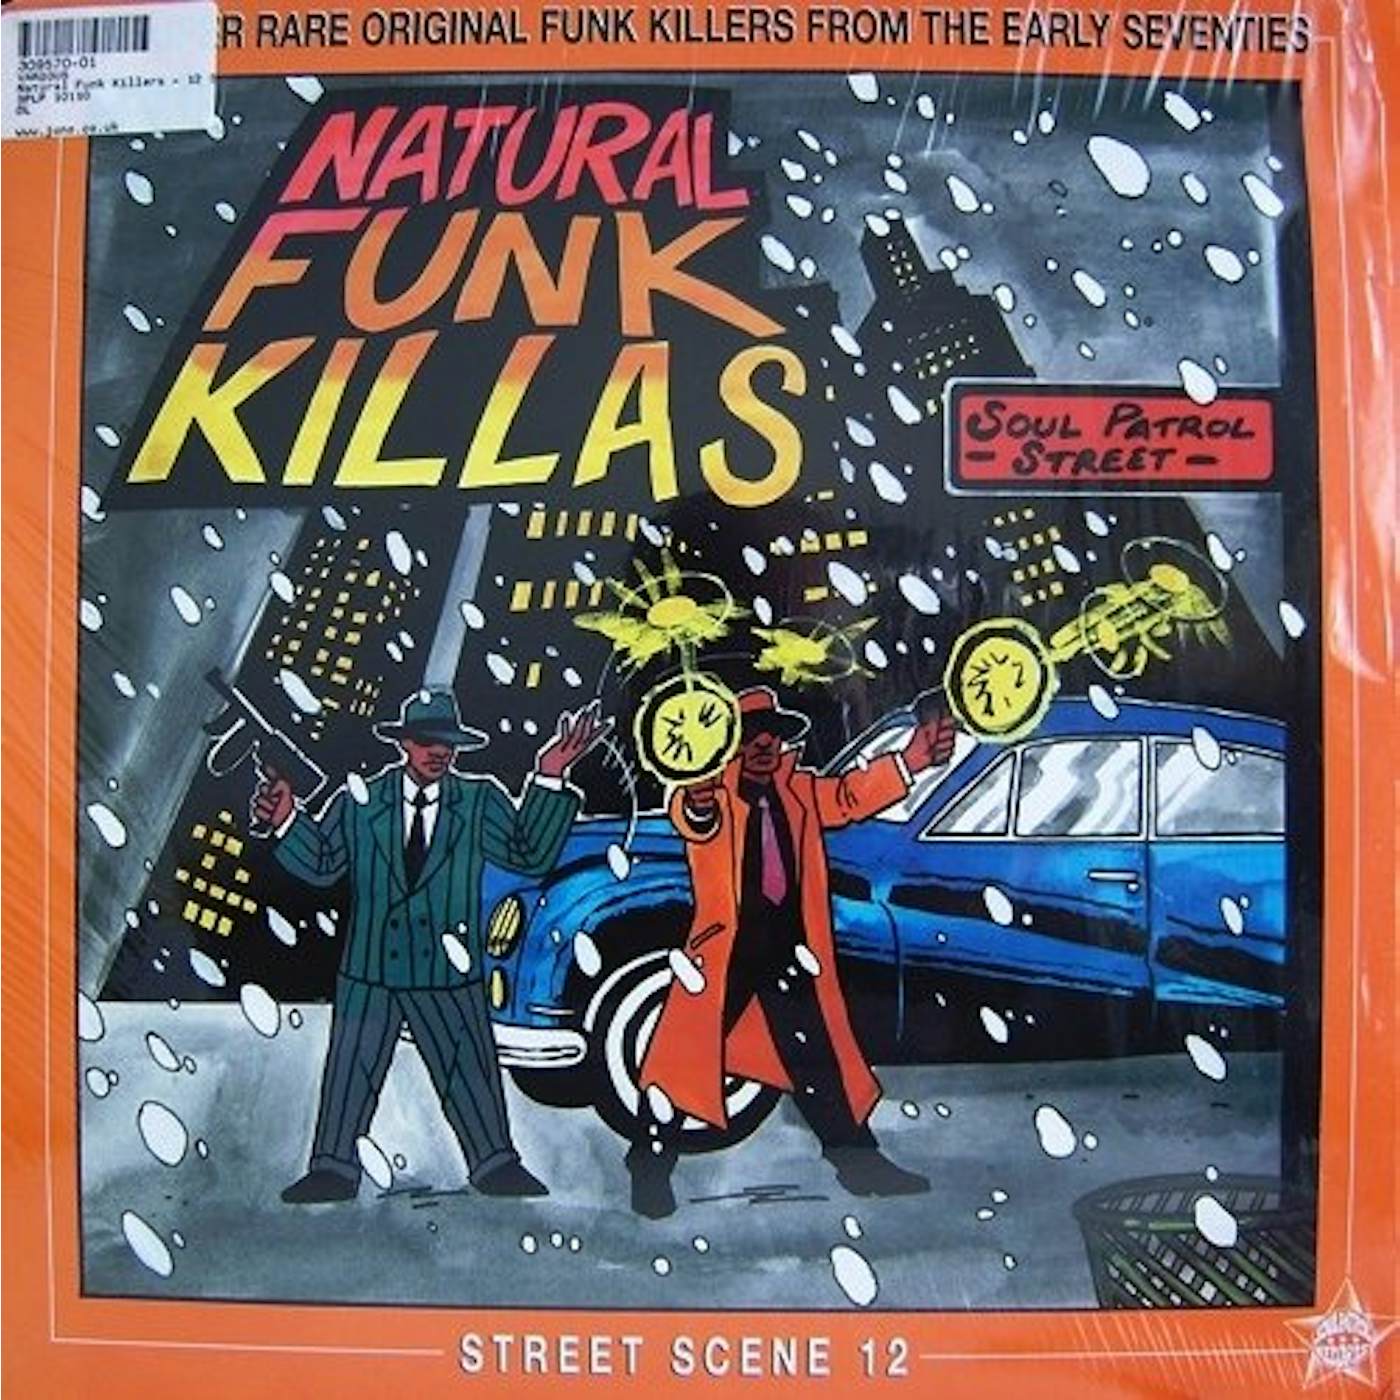 NATURAL FUNK KILLAS Vinyl Record